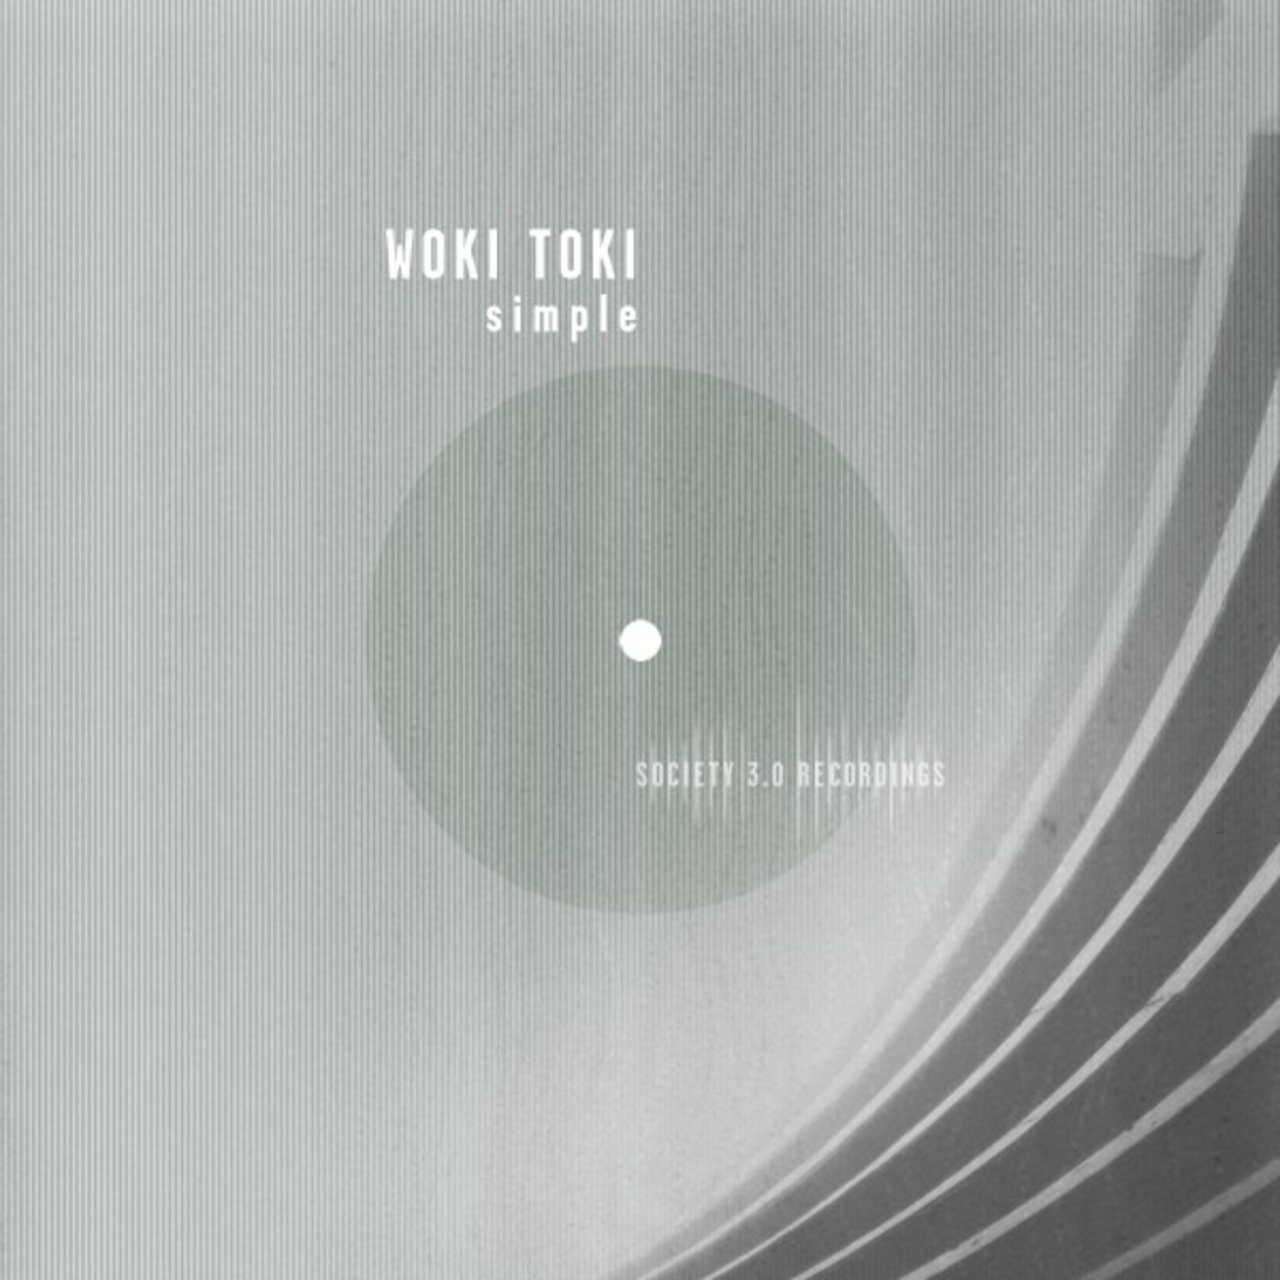 Woki Toki - Simple / Society 3.0